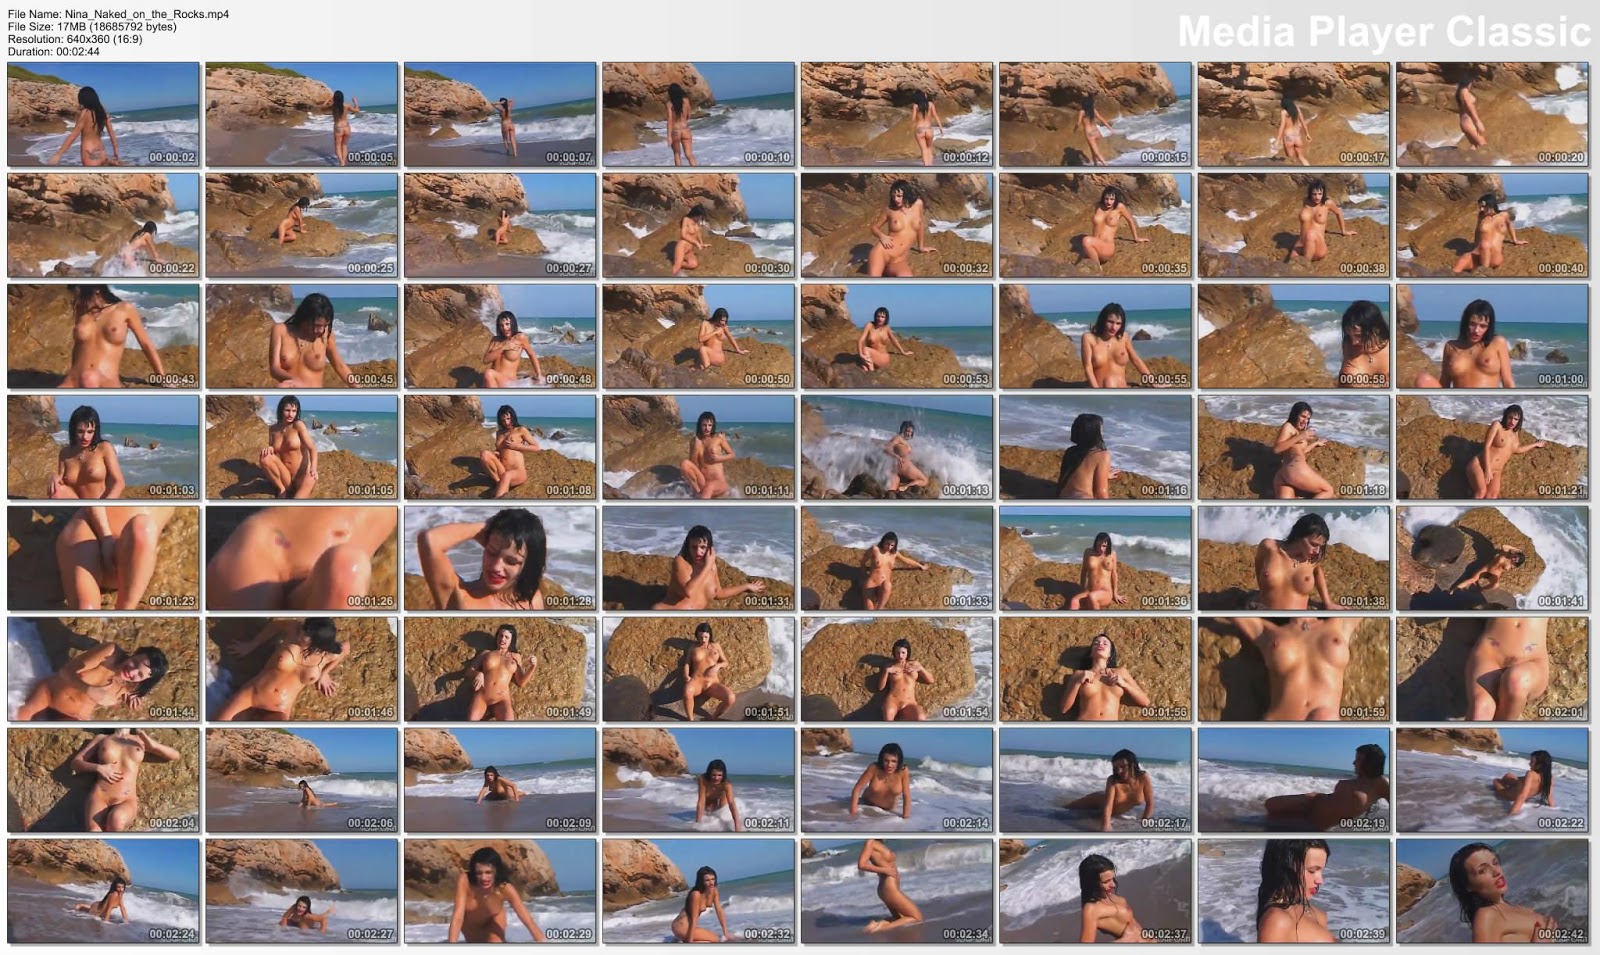 chica desnuda en la playa [Expectacular]